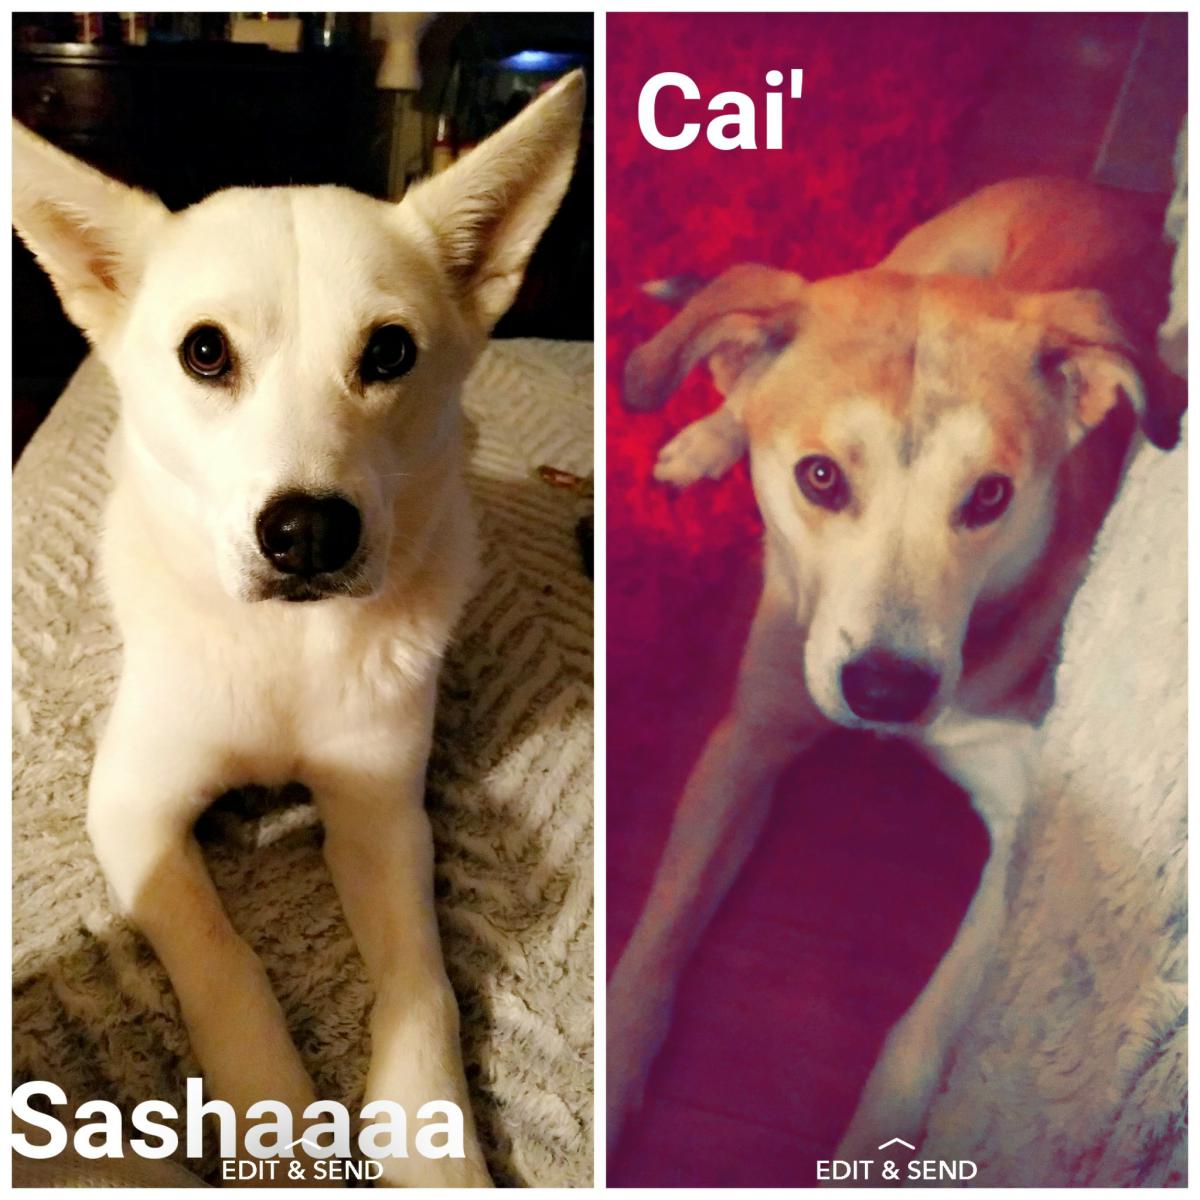 Image of Sasha and cairo, Lost Dog